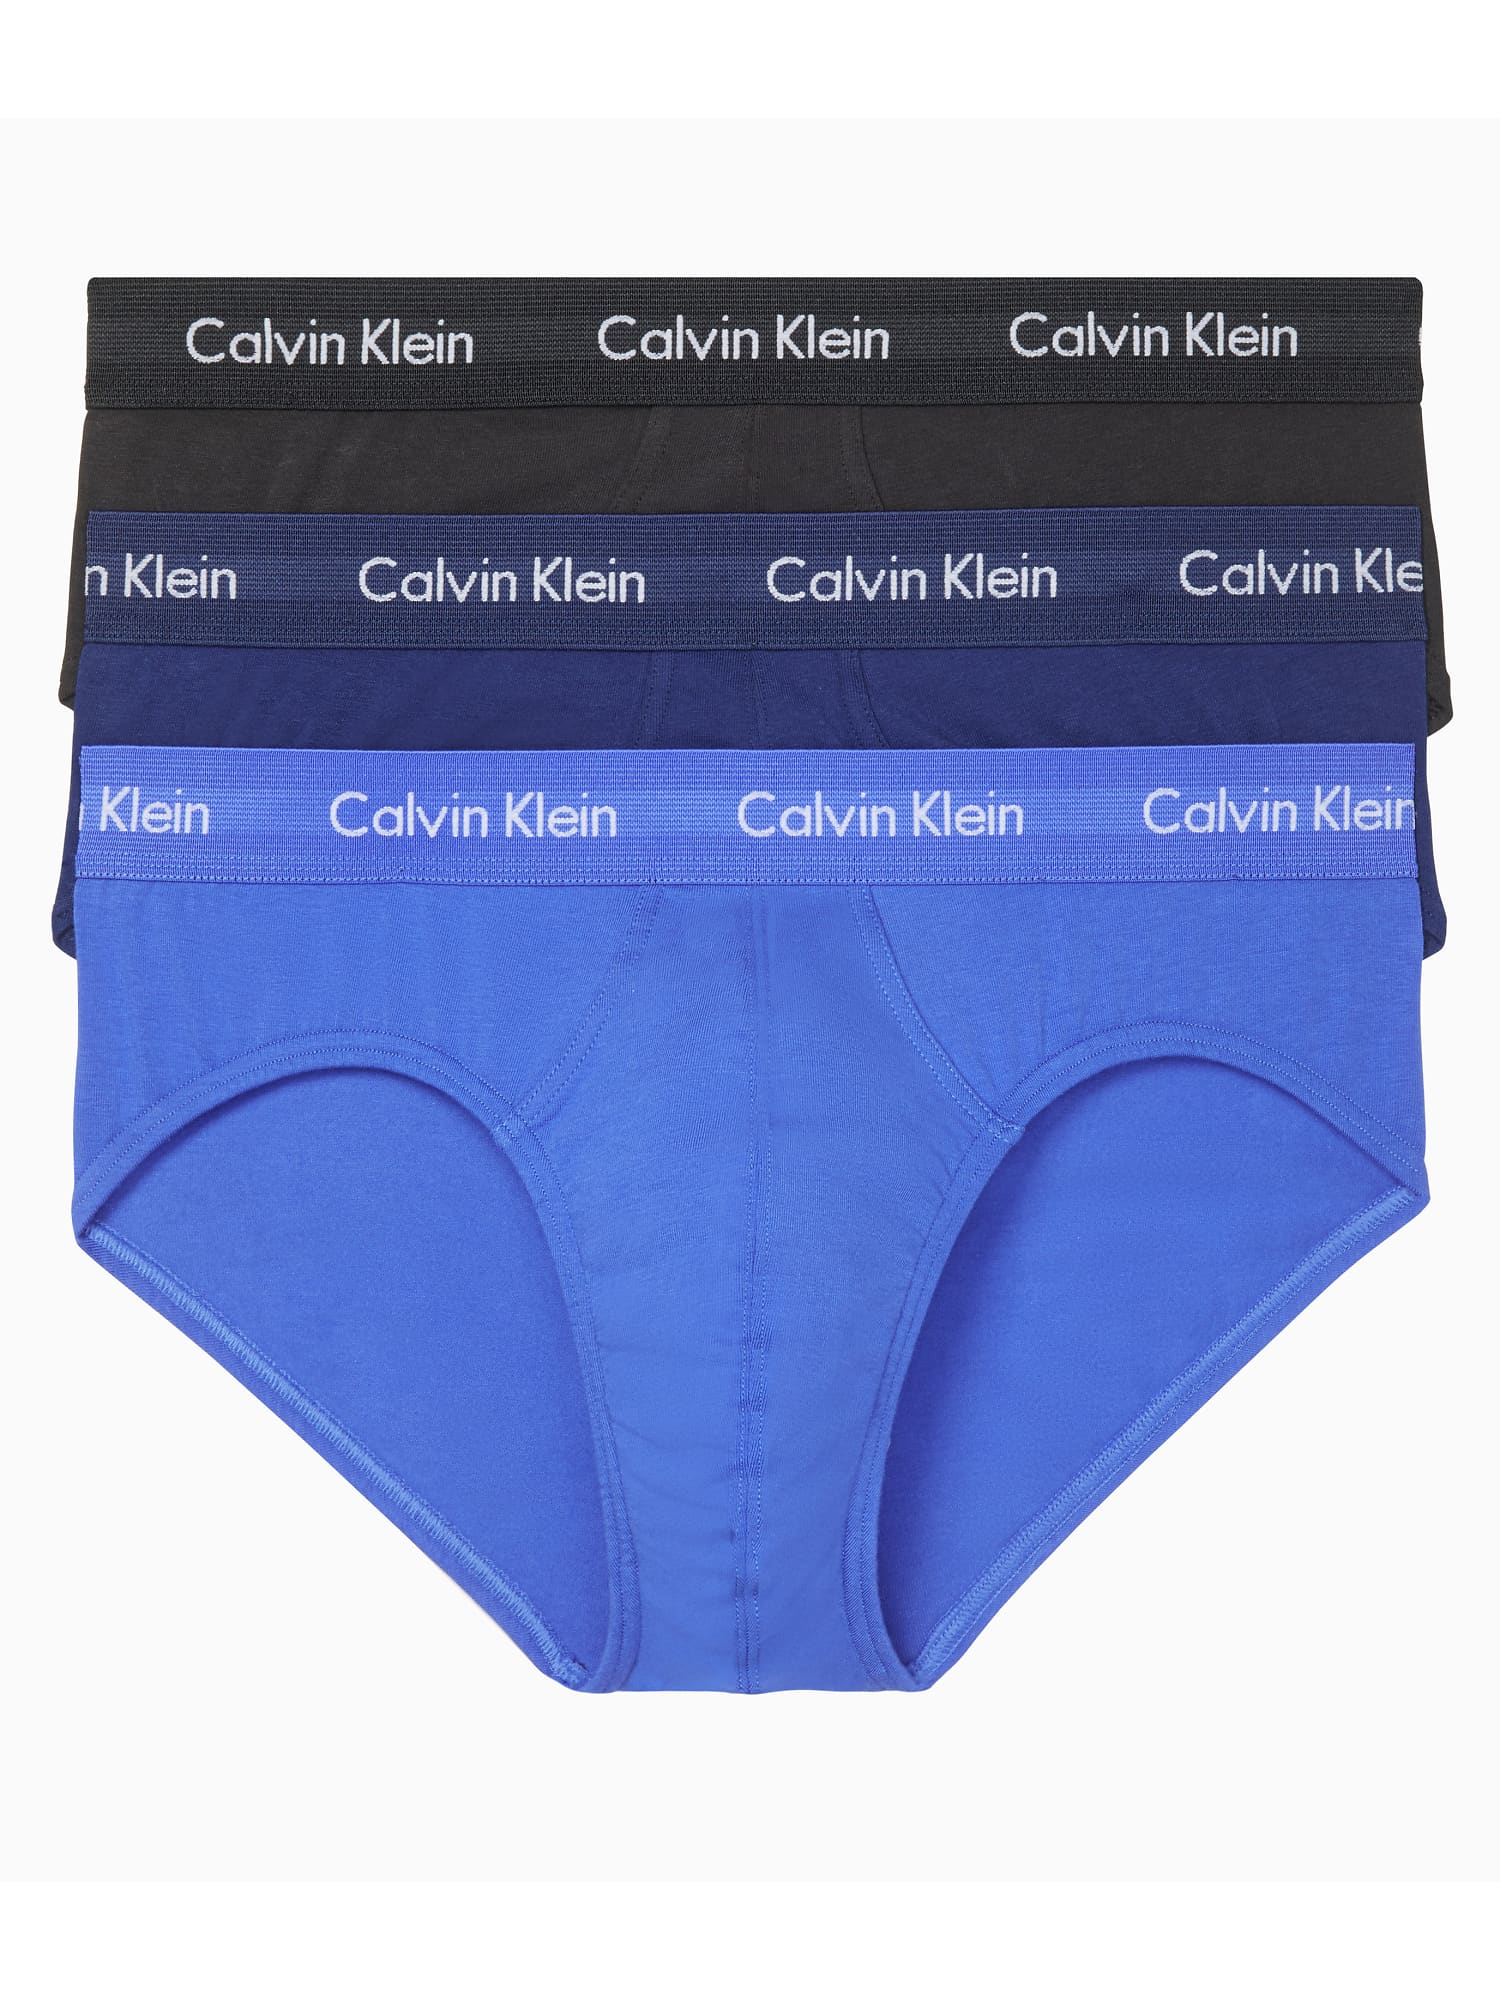 Calvin Klein Cotton Stretch Hip Brief 3-Pack Underwear - Men's | eBay